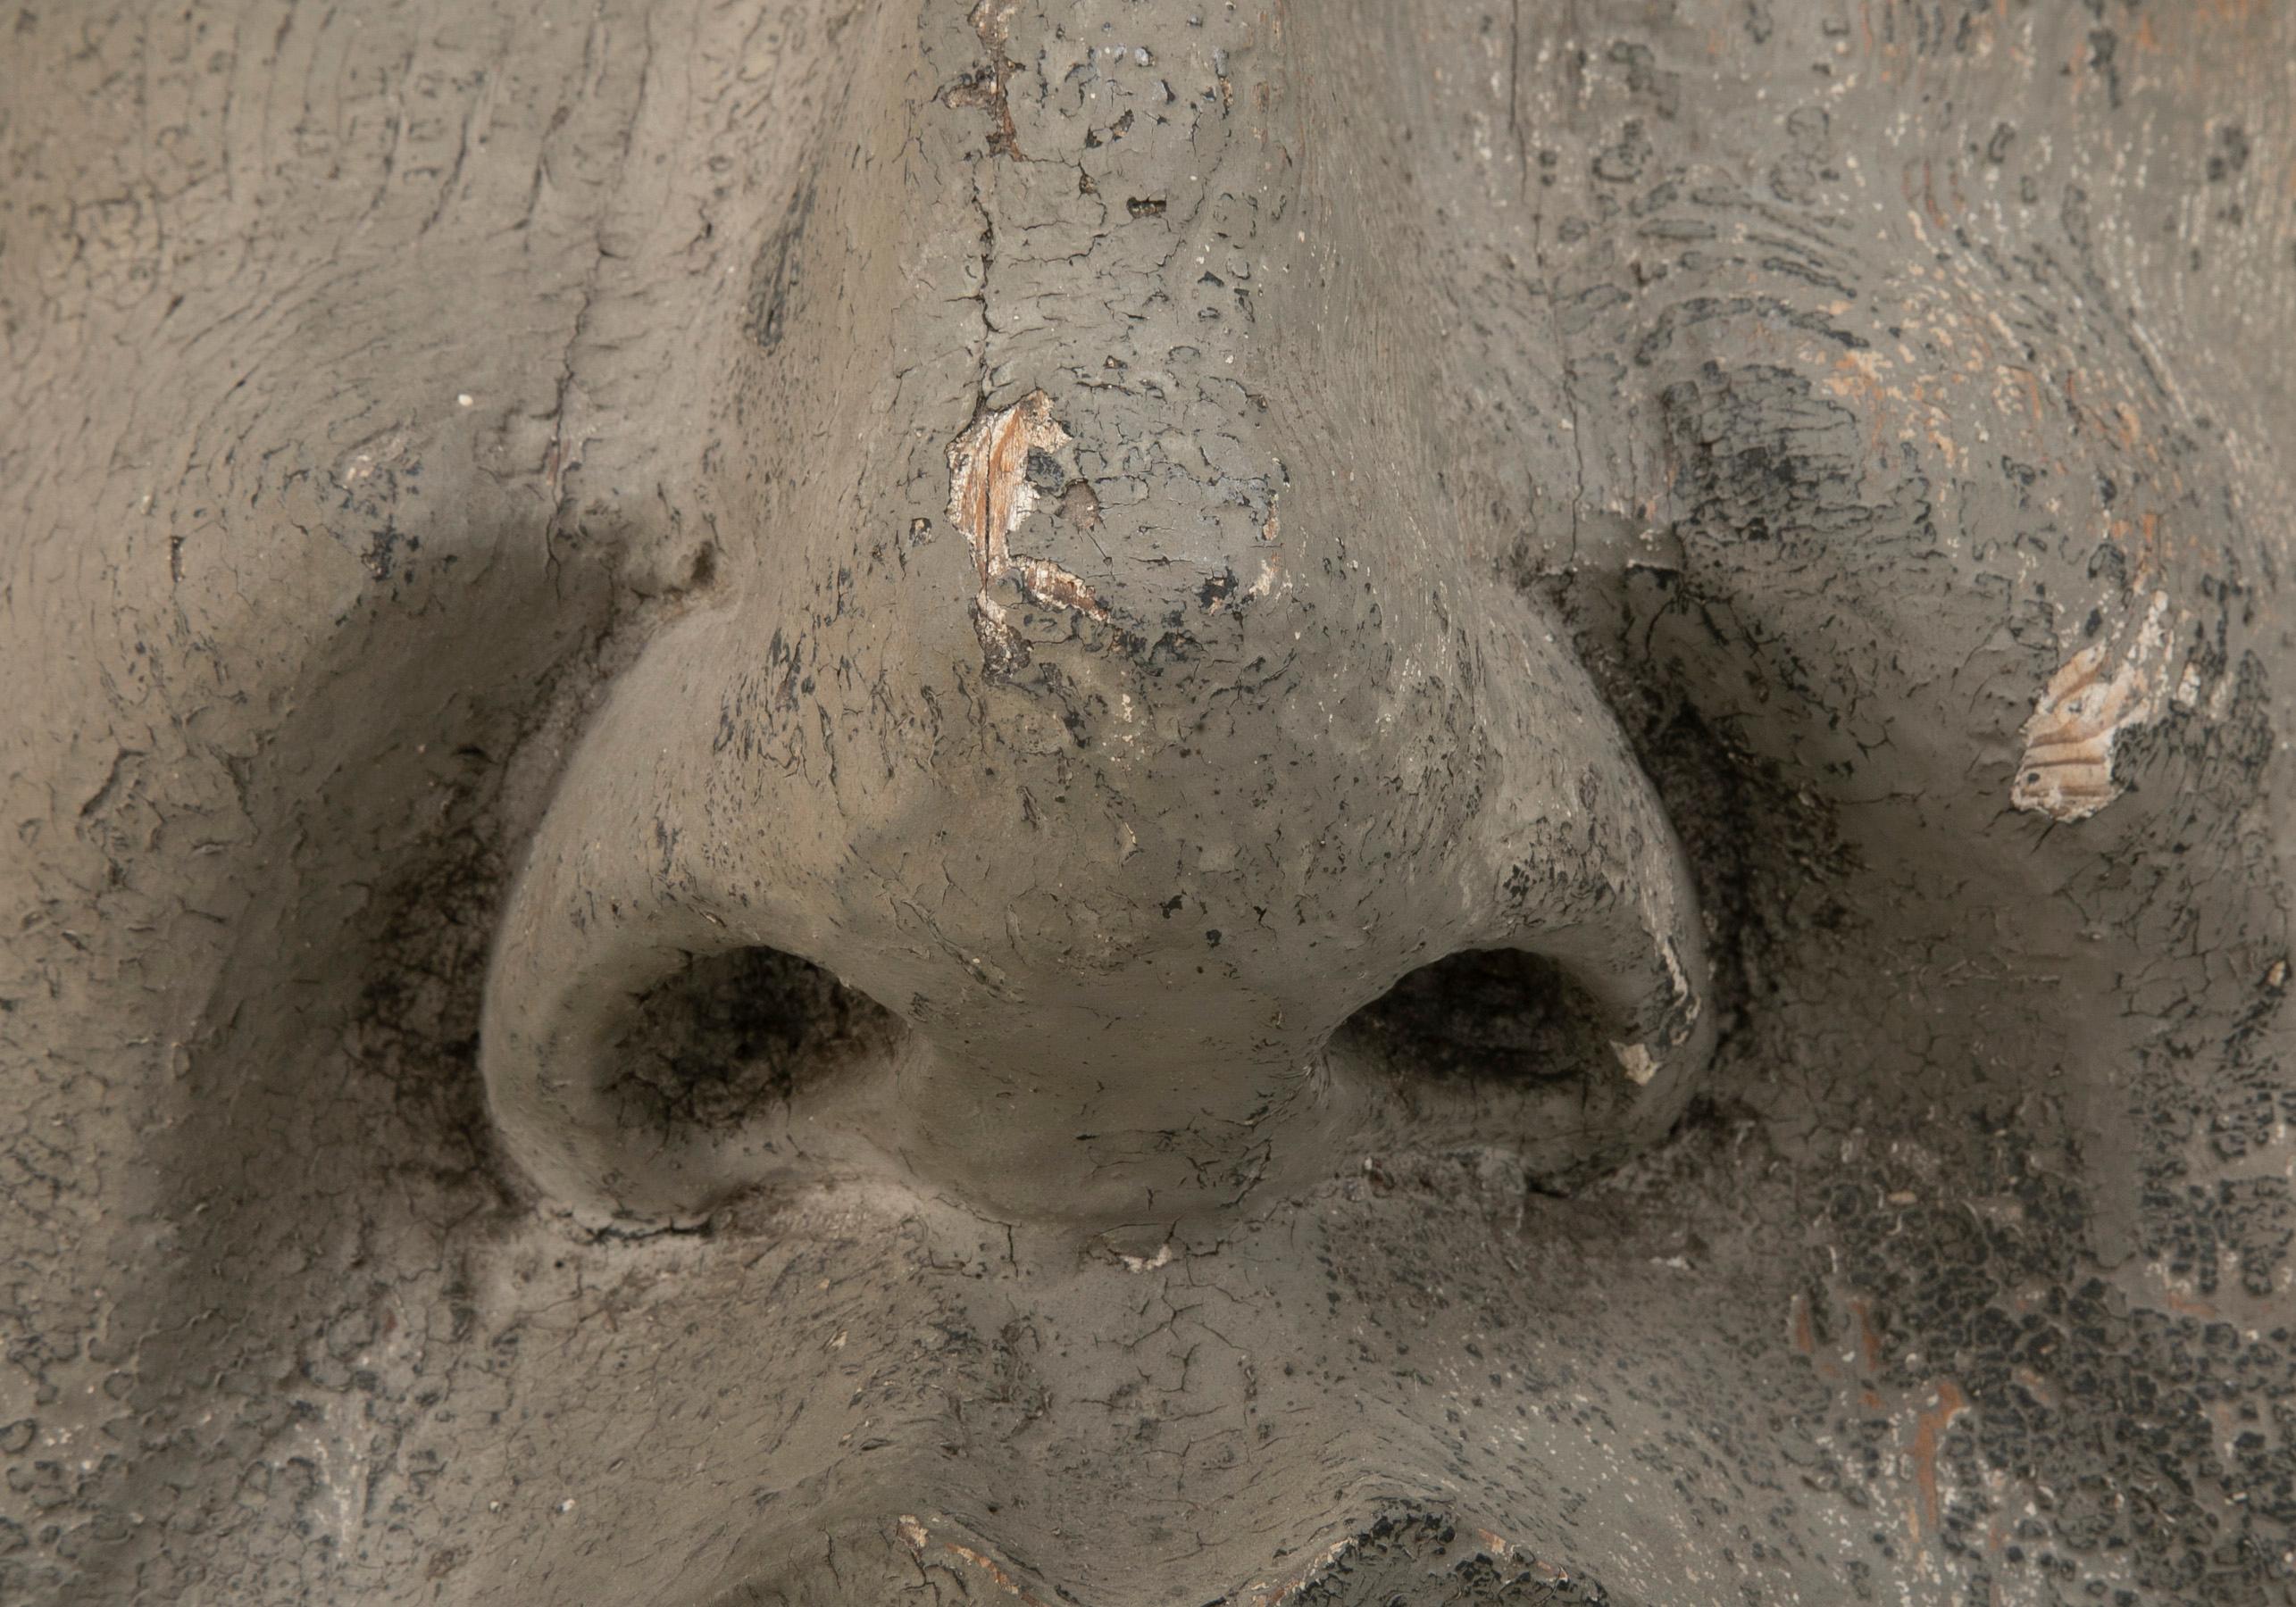 Geschnitztes und bemaltes Architekturelement aus Holz in Form einer Maske 